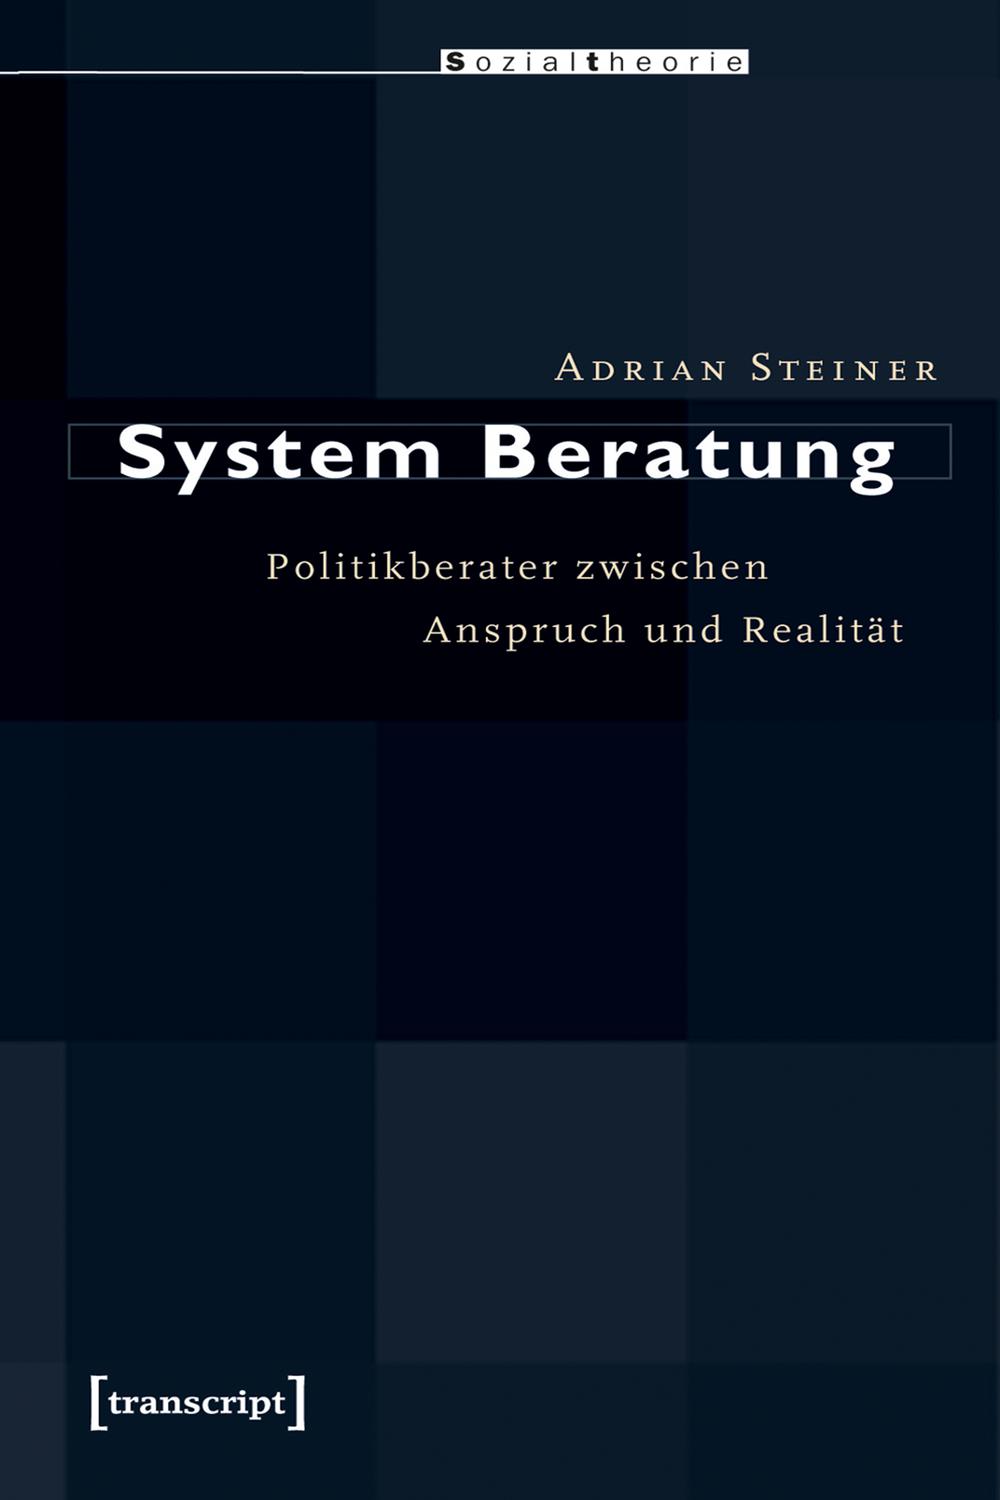 System Beratung - Adrian Steiner